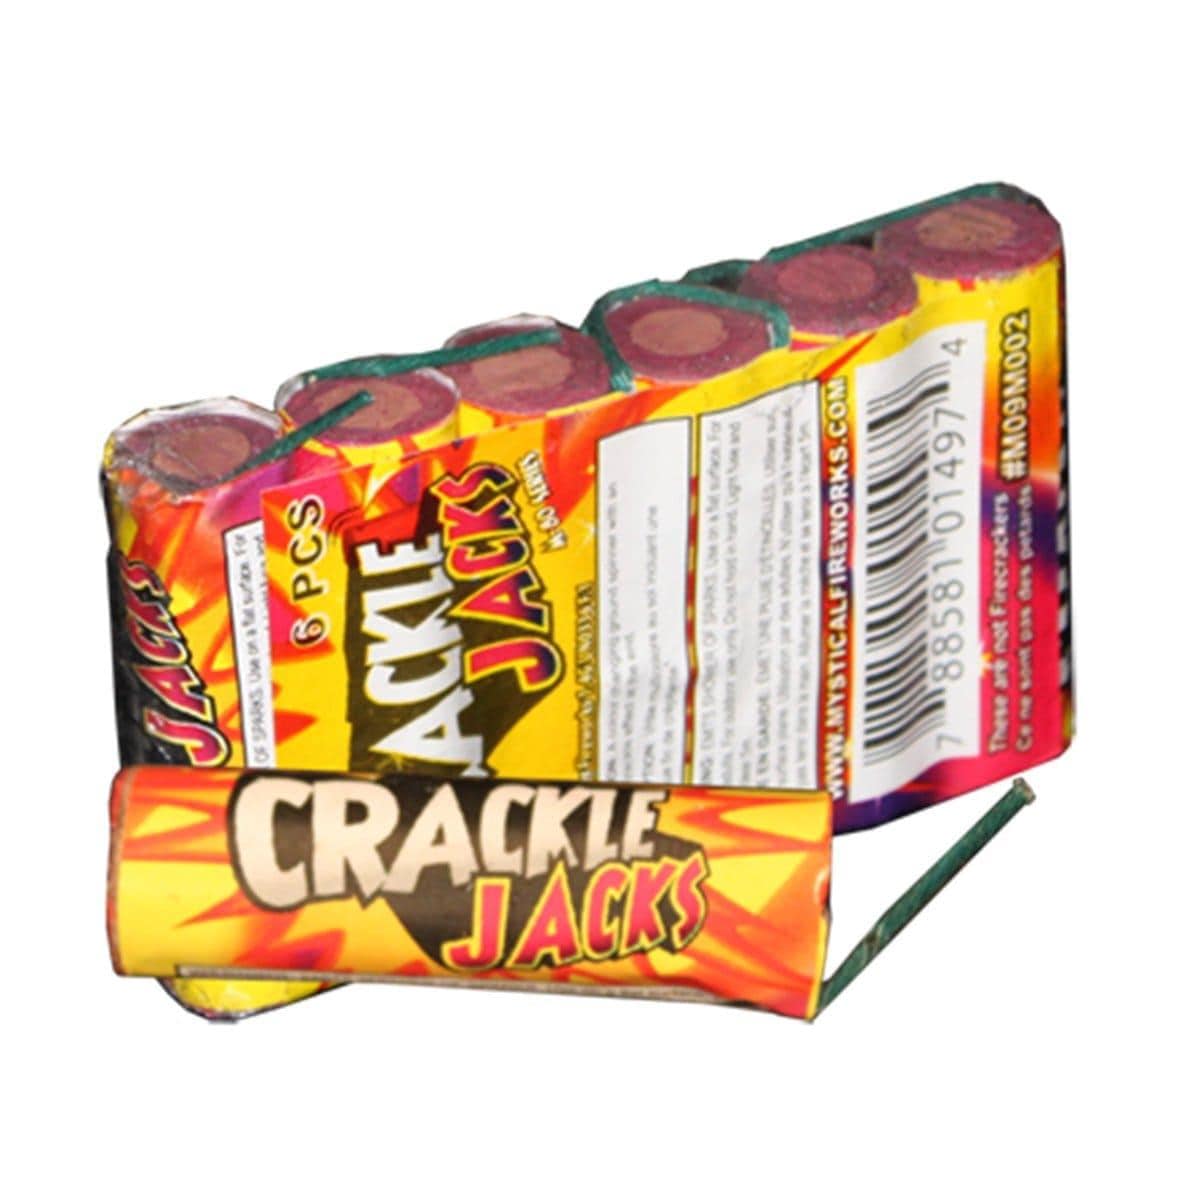 Buy Fireworks Crackle Jacks sold at Party Expert